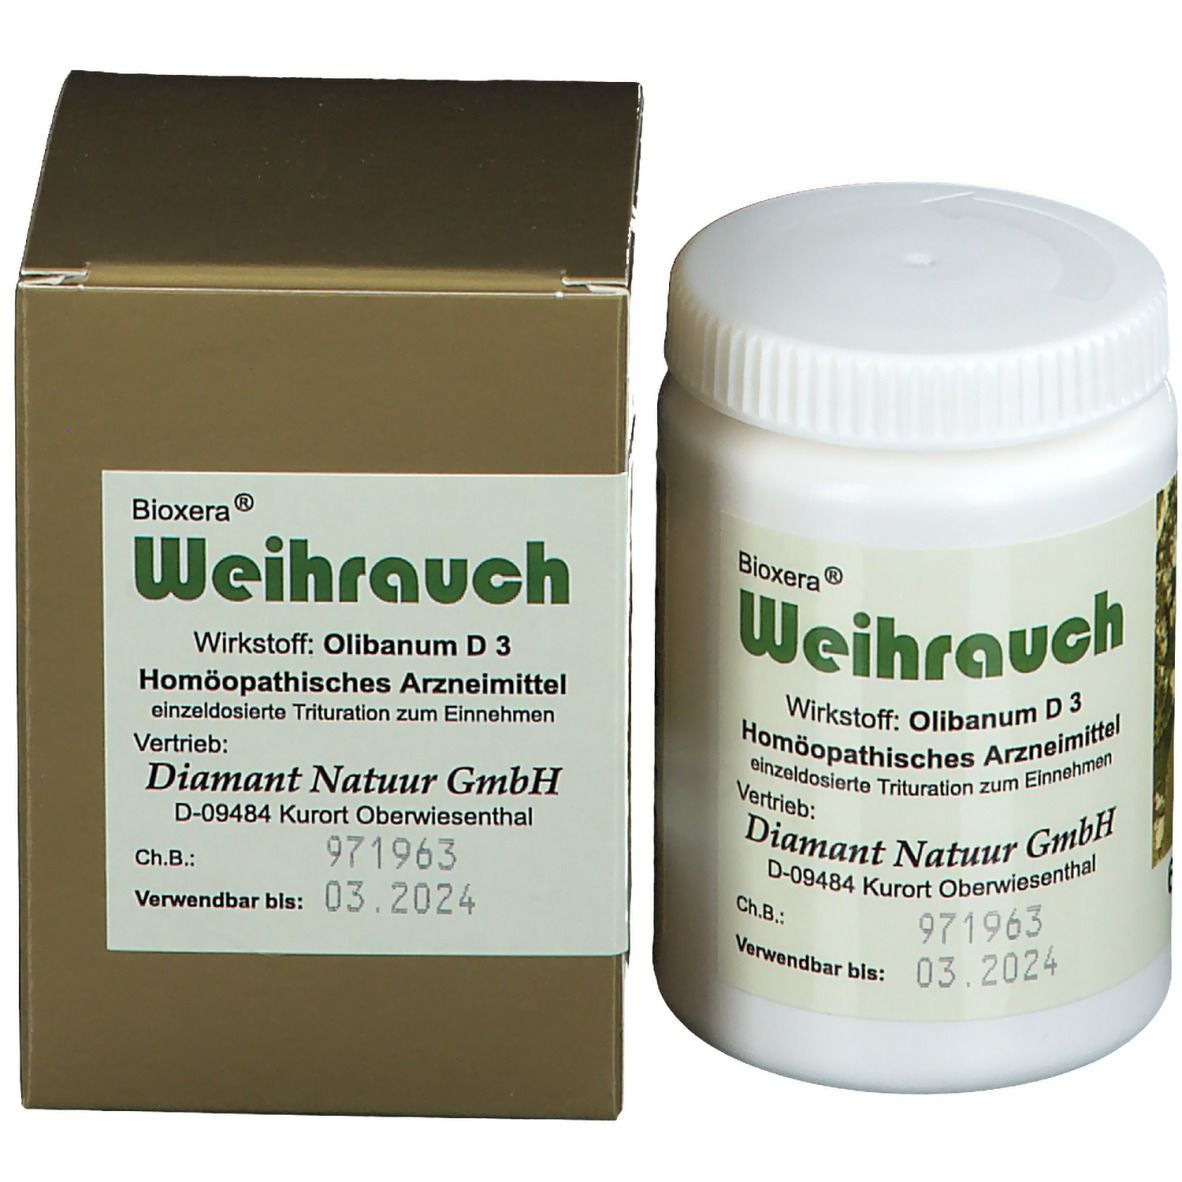 Bioxera® Weihrauch